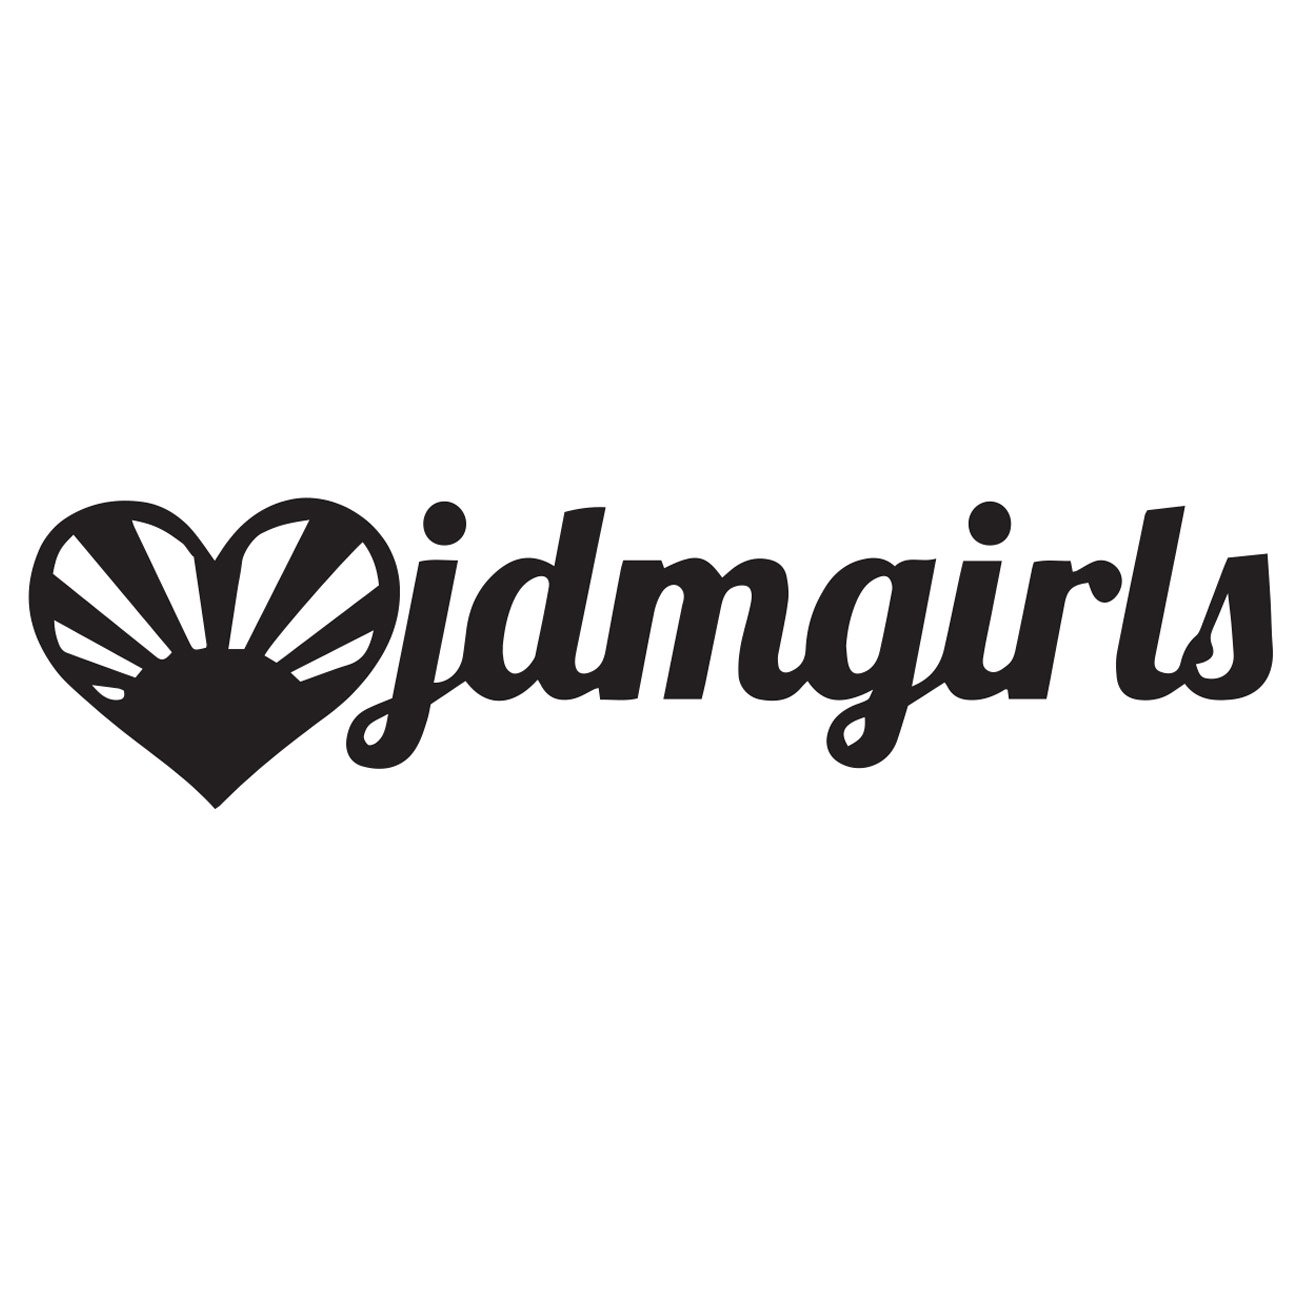 JDM Girls